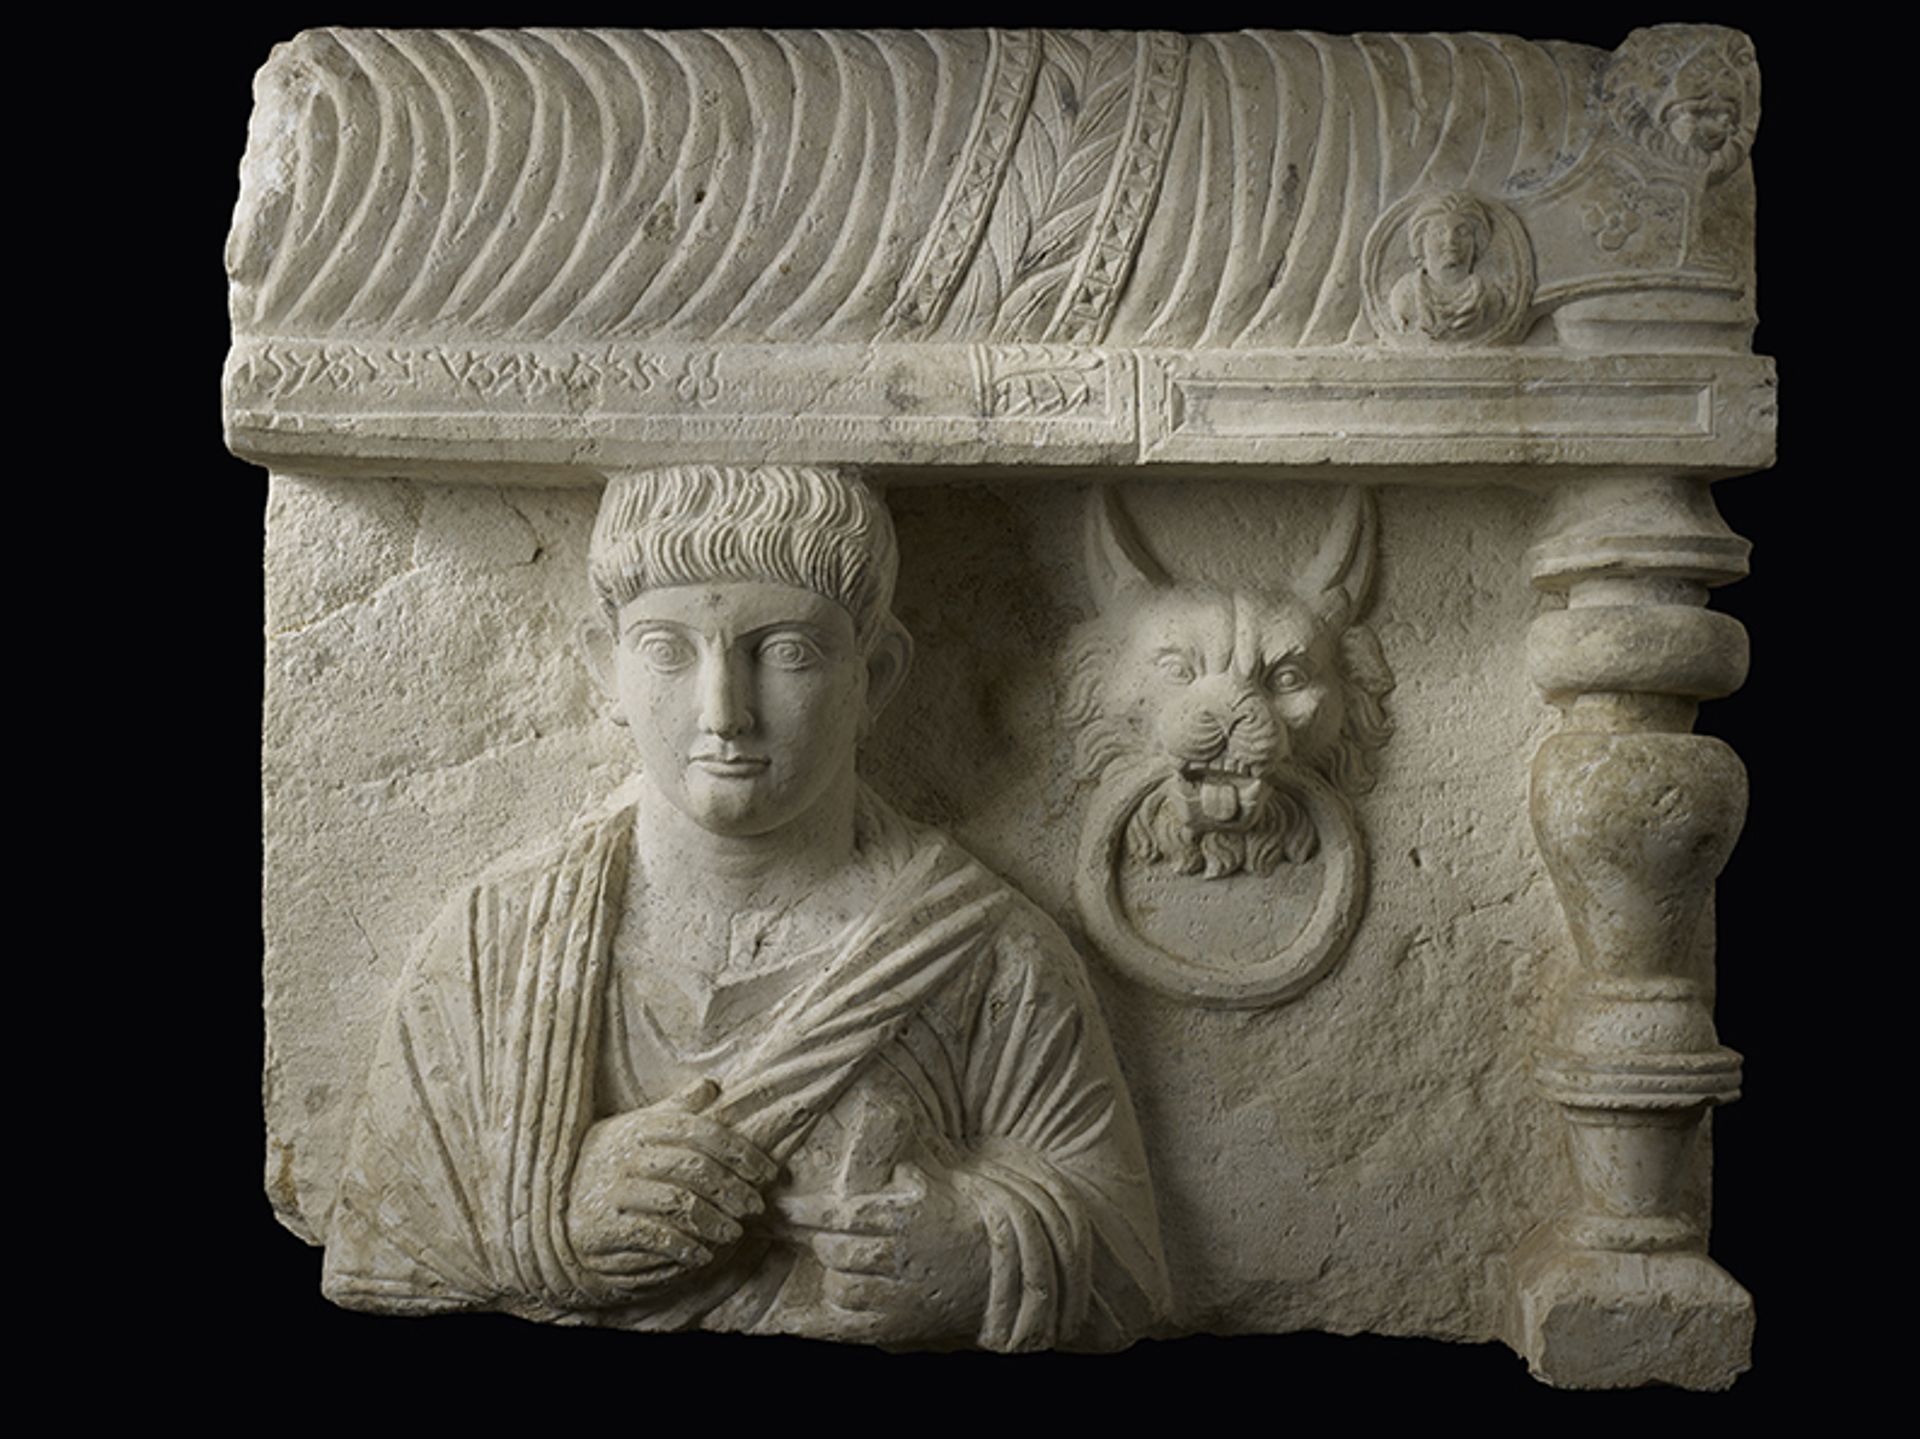 תבליט קבורה עם כתובת המייצגת דיוקן גבר. סוריה, פלמירה (המחצית הראשונה של המאה השנייה לספירה). 

© MAH, צילום: F. Bevilacqua


